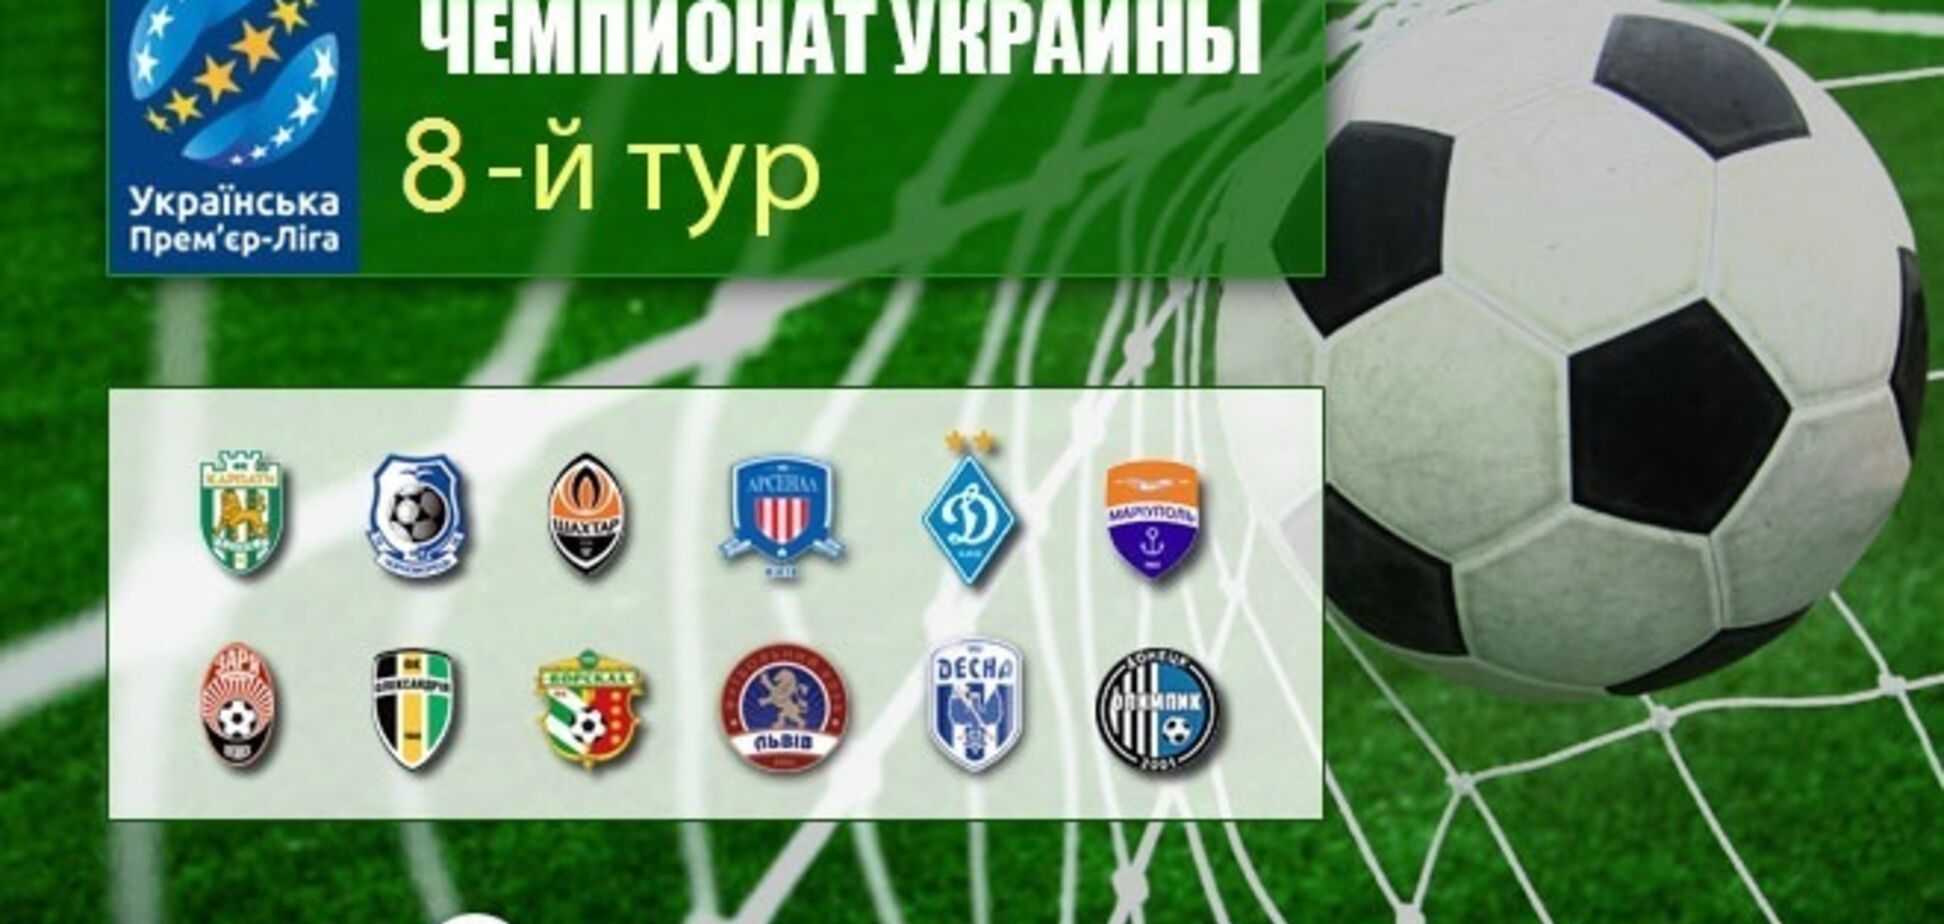 8-й тур чемпіонату України з футболу: результати та огляди